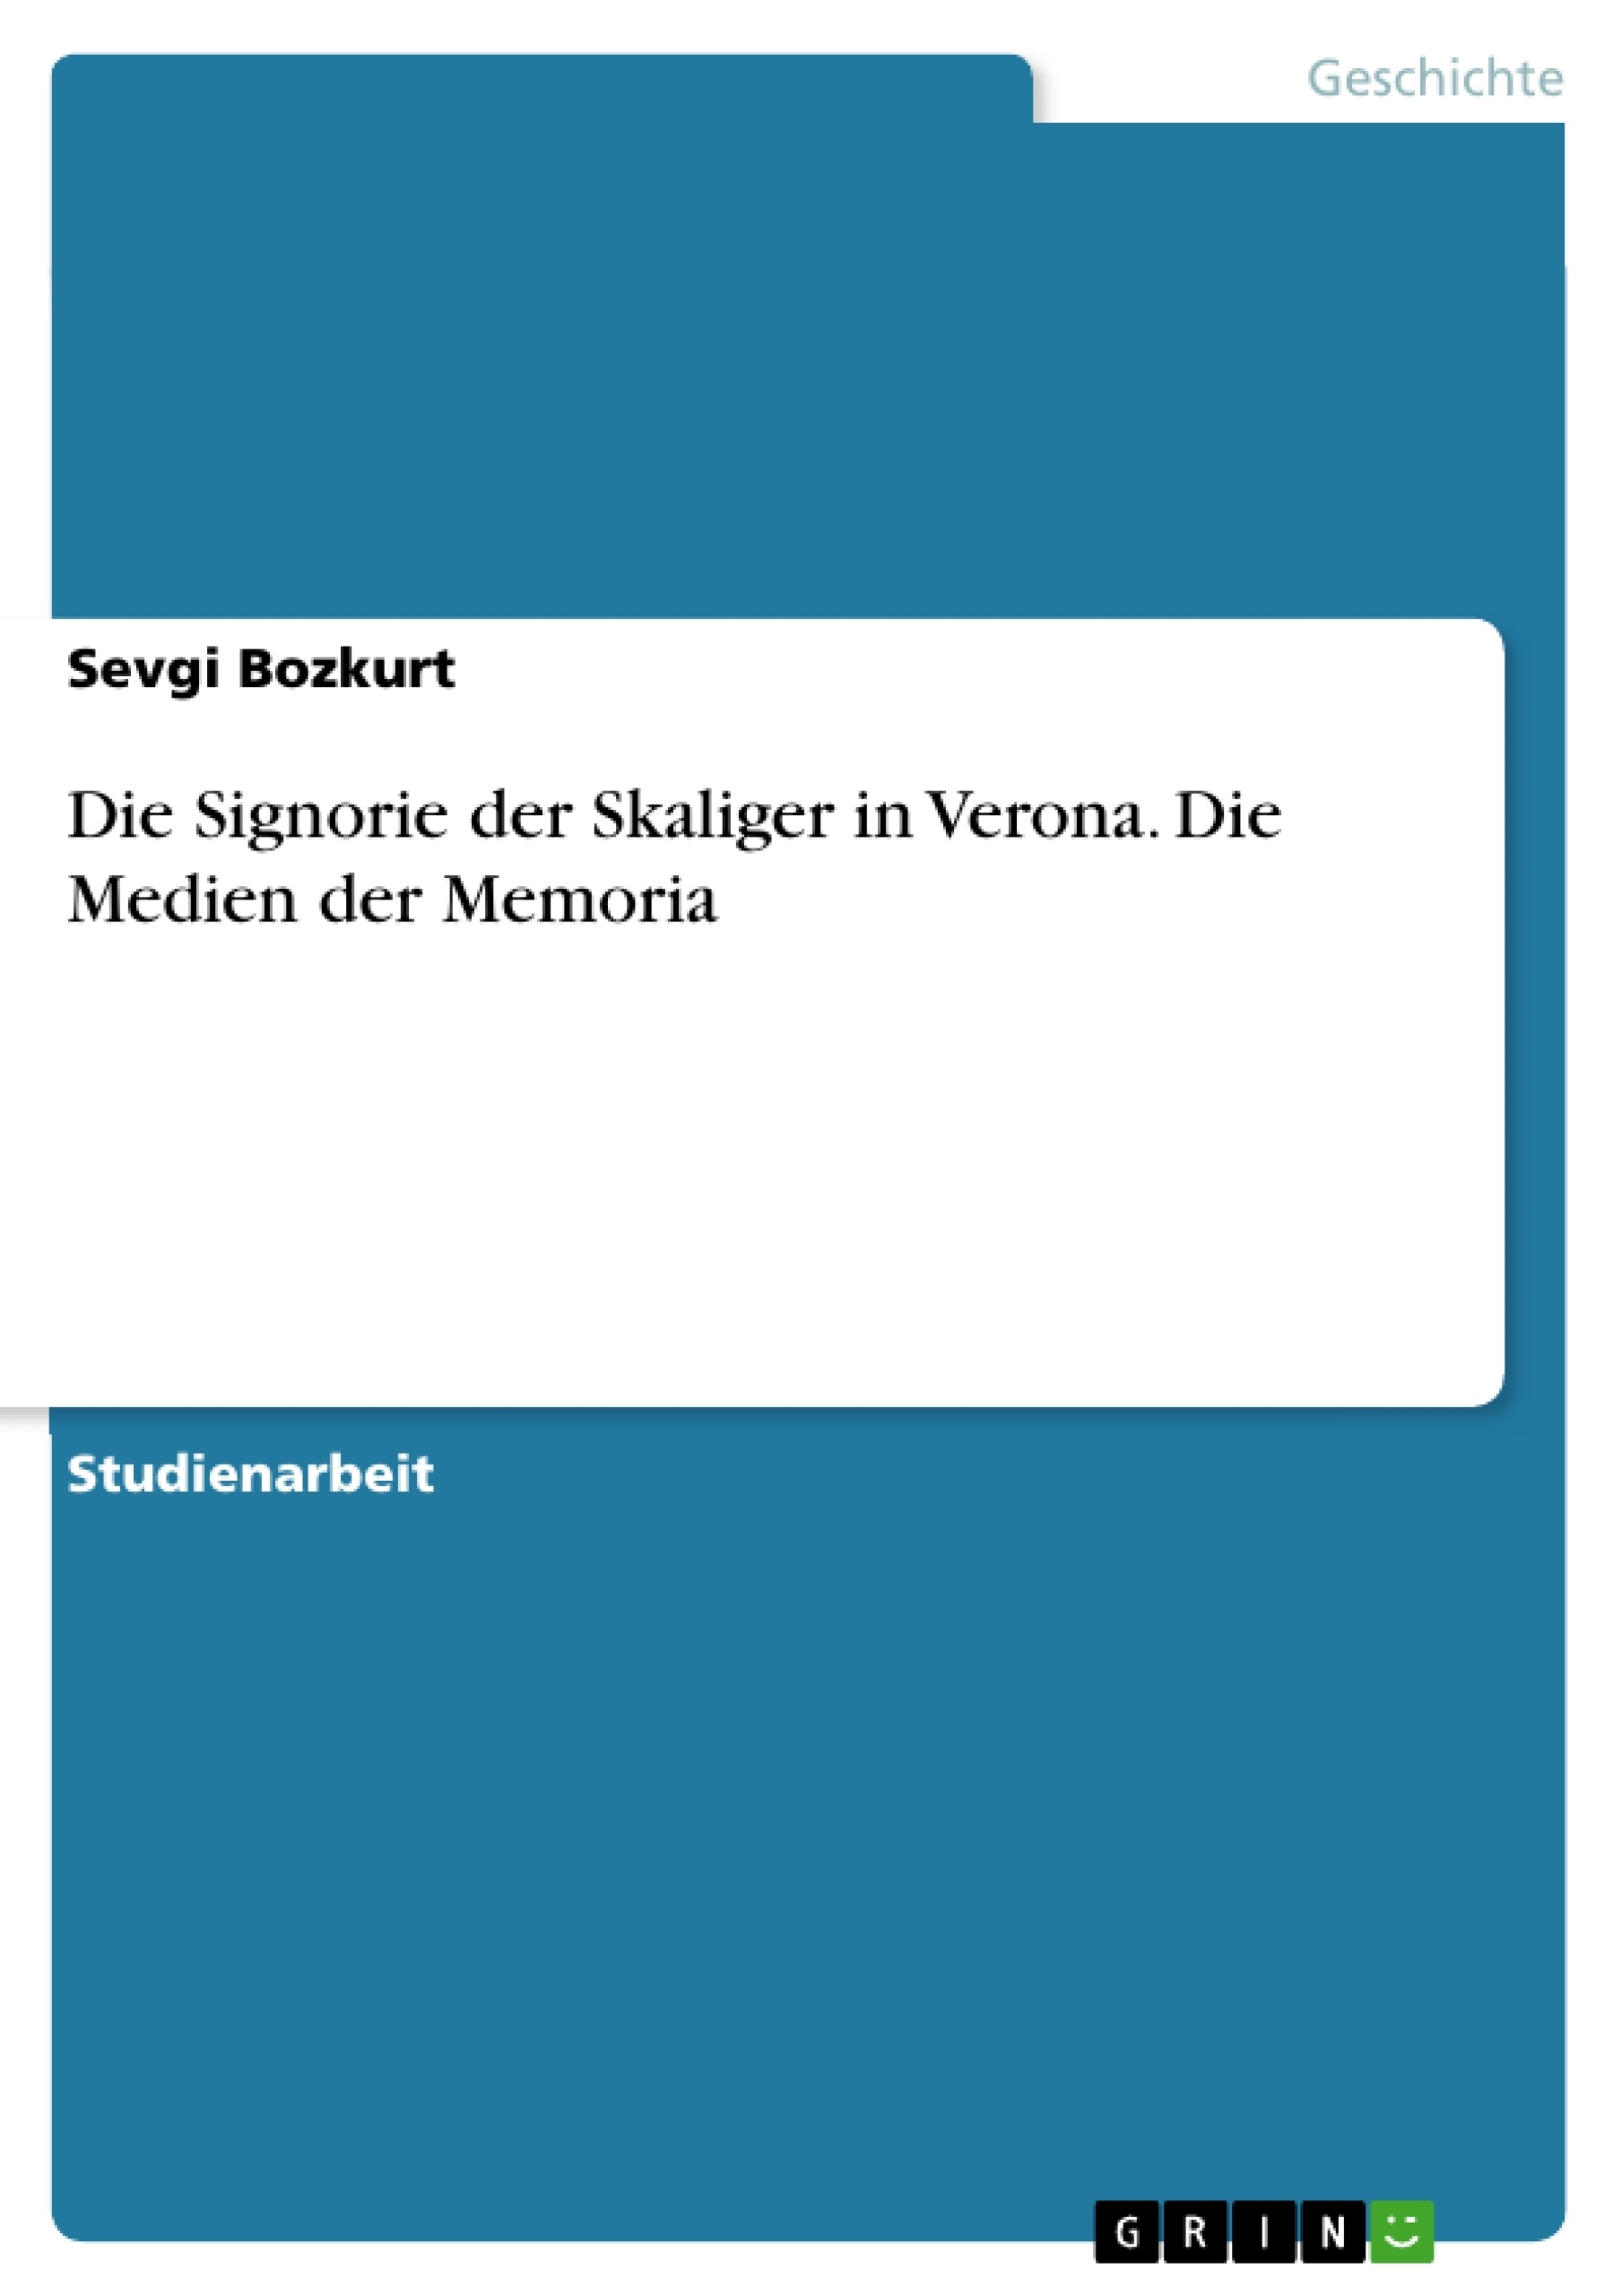 Title: Die Signorie der Skaliger in Verona. Die Medien der Memoria